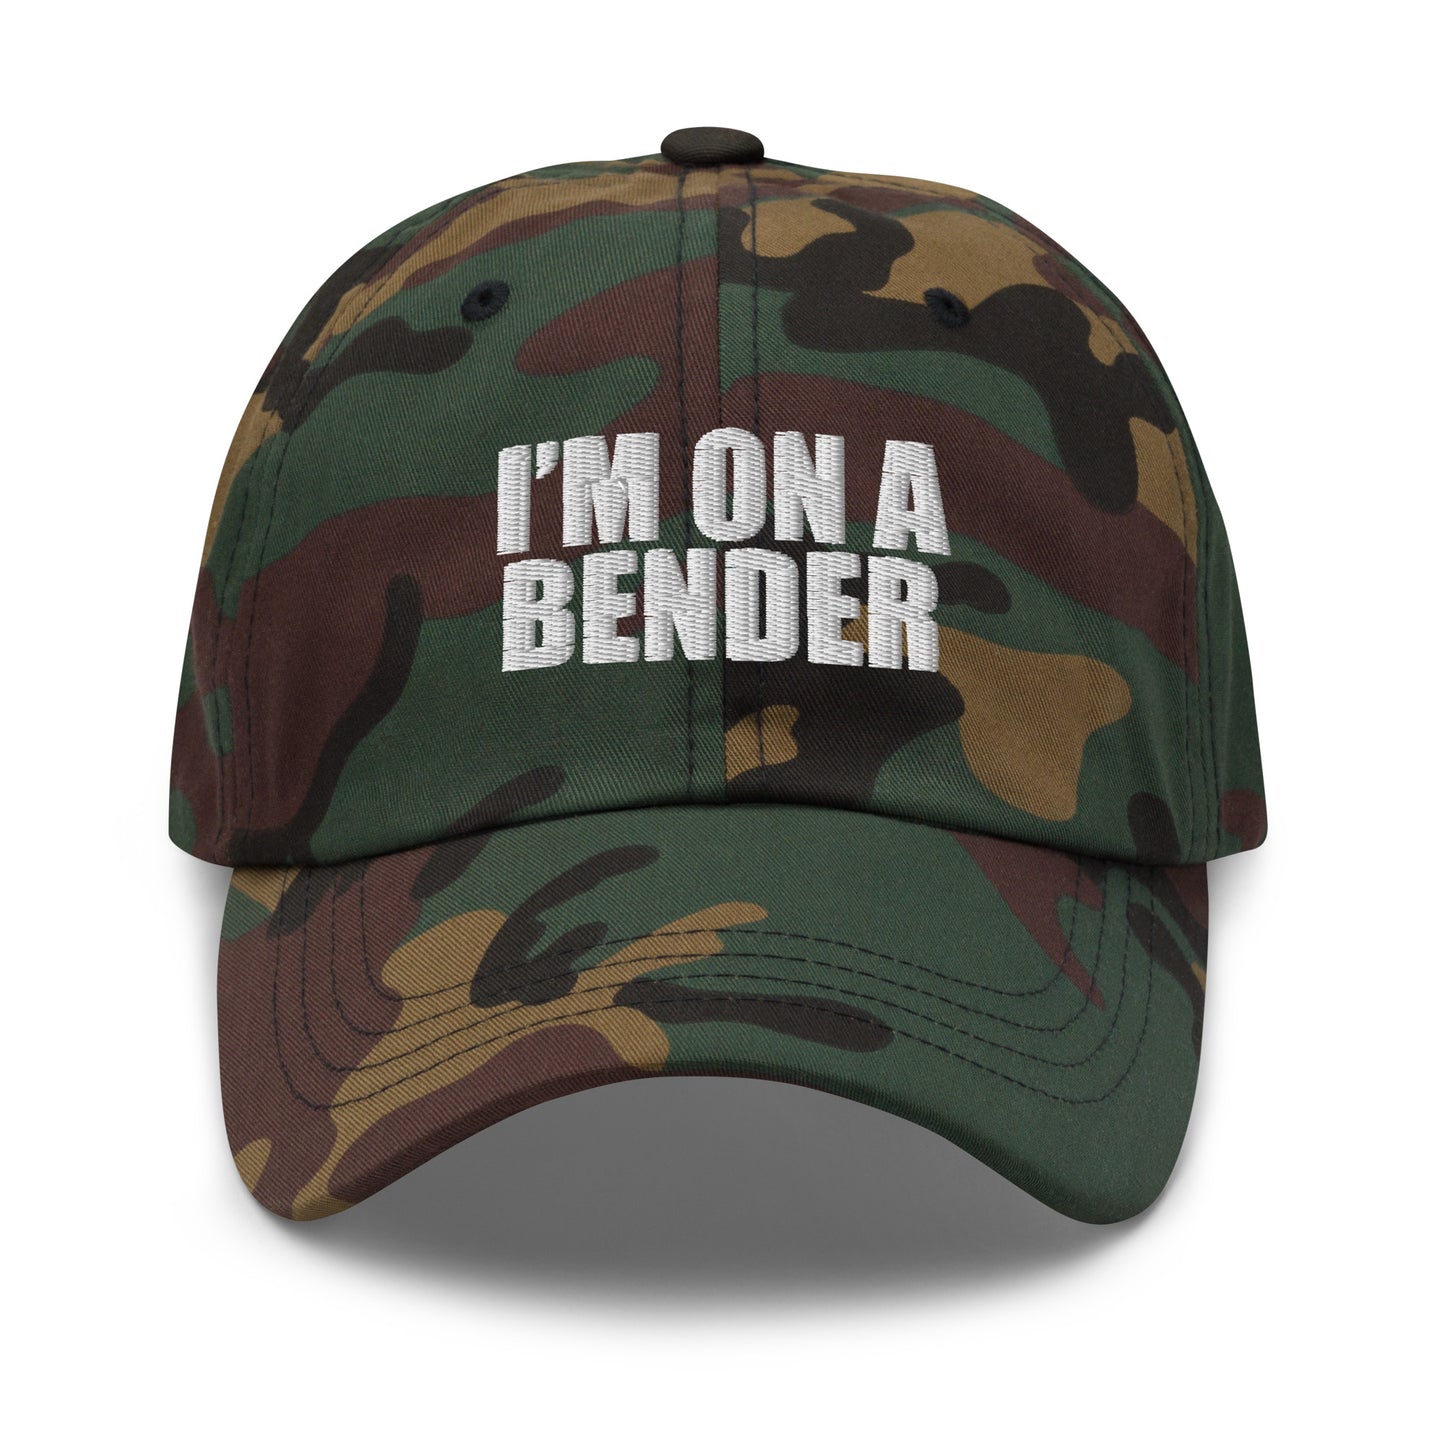 Bender - Dad hat